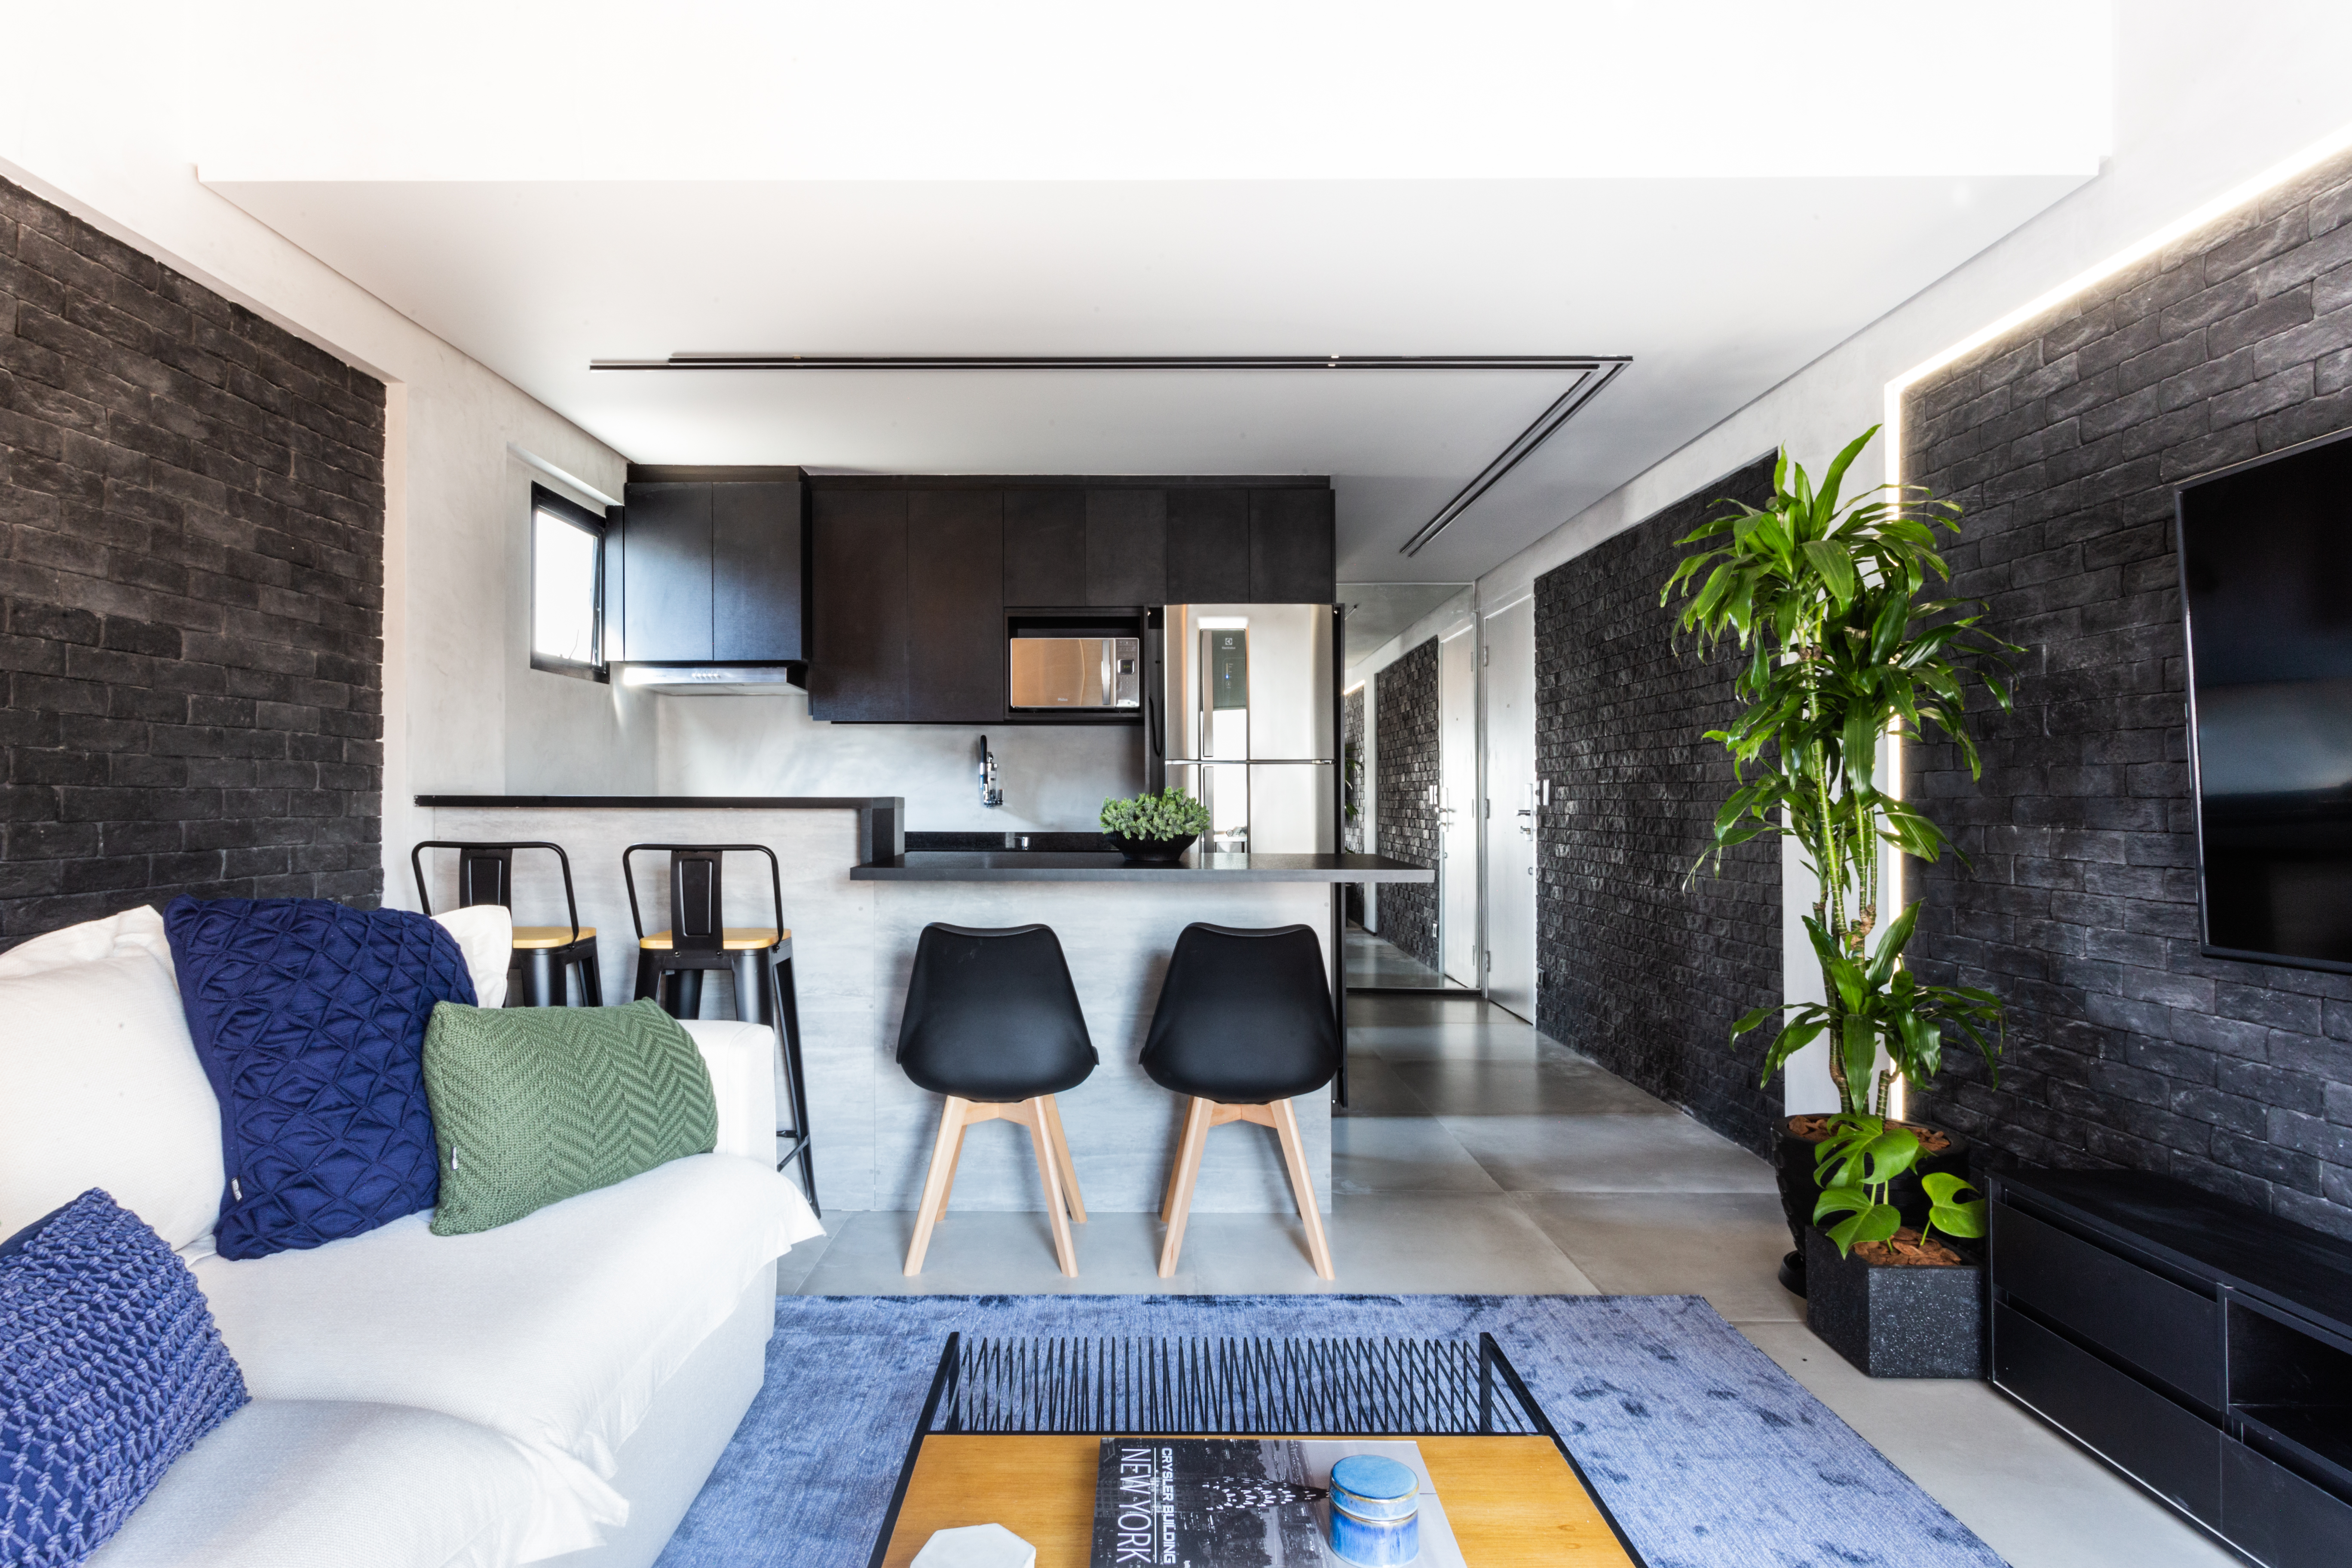 Estilo urban jungle e cores sóbrias transformam este loft de 50 m²